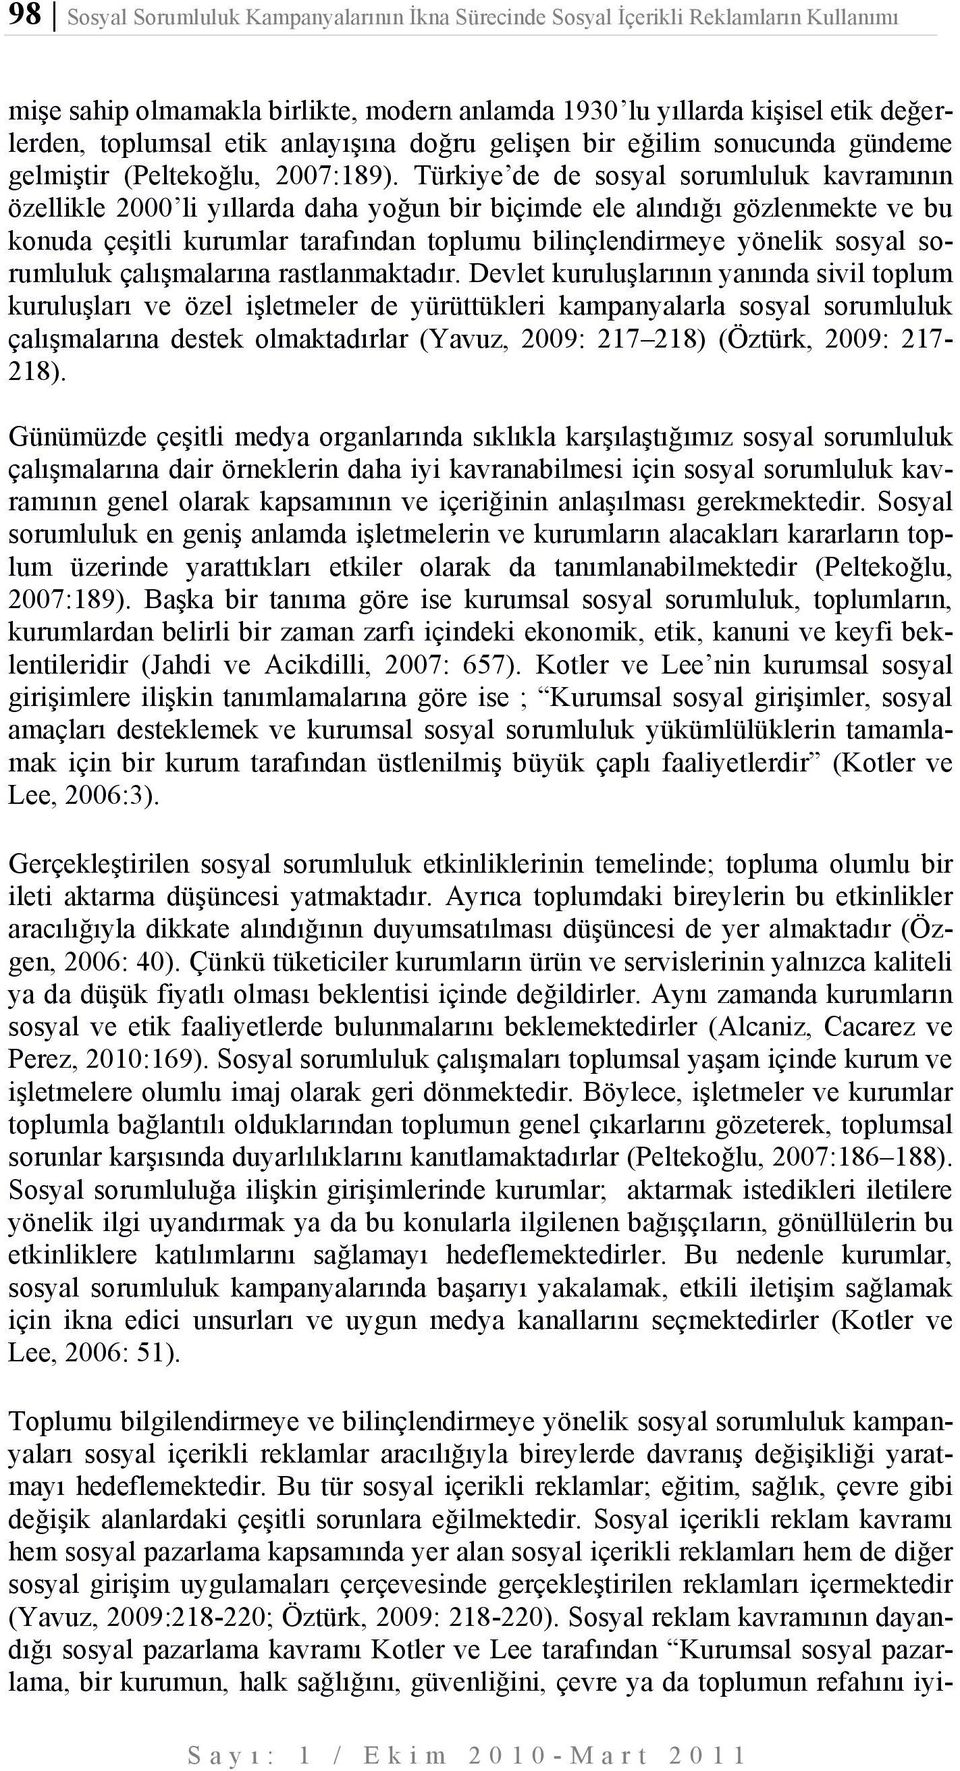 Türkiye de de sosyal sorumluluk kavramının özellikle 2000 li yıllarda daha yoğun bir biçimde ele alındığı gözlenmekte ve bu konuda çeşitli kurumlar tarafından toplumu bilinçlendirmeye yönelik sosyal